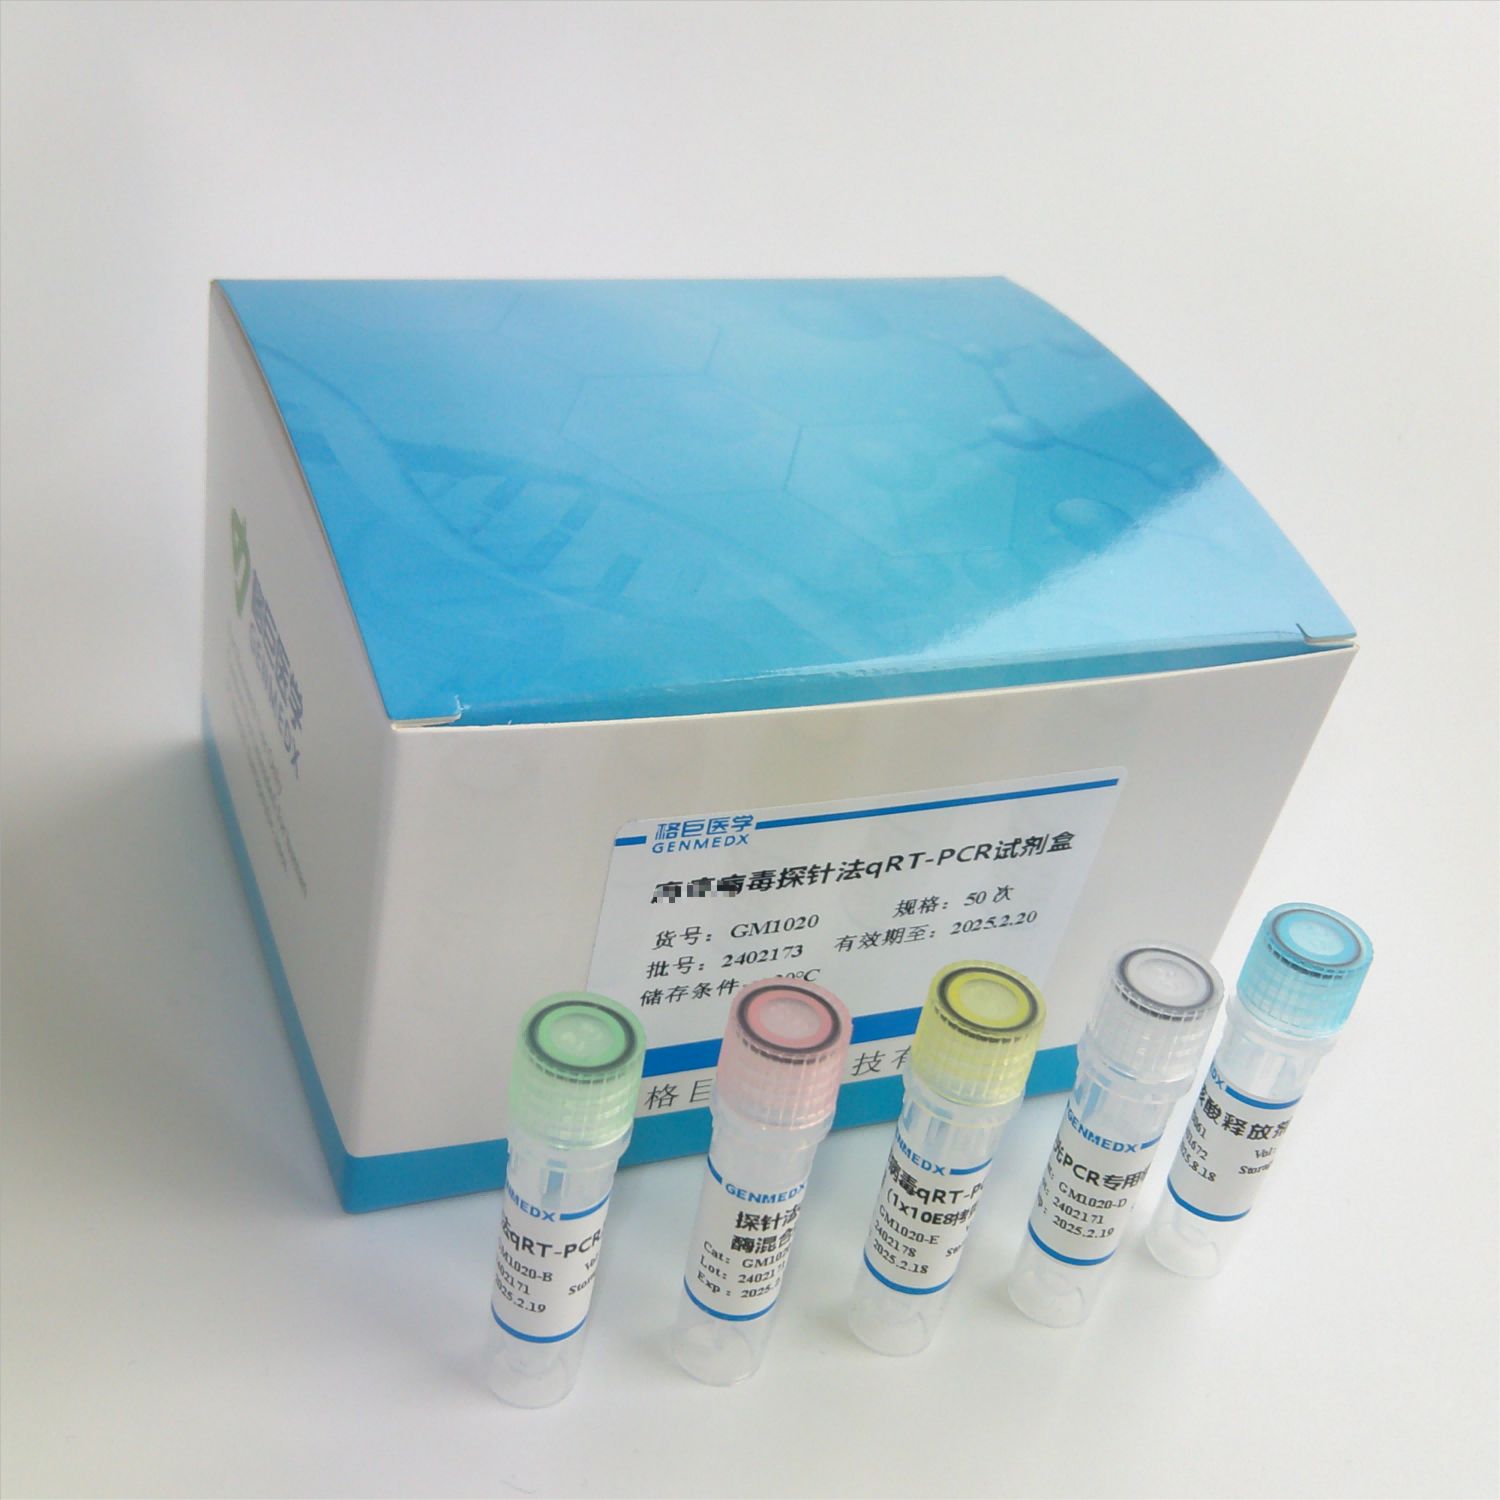 人星状病毒探针法荧光定量RT-PCR试剂盒